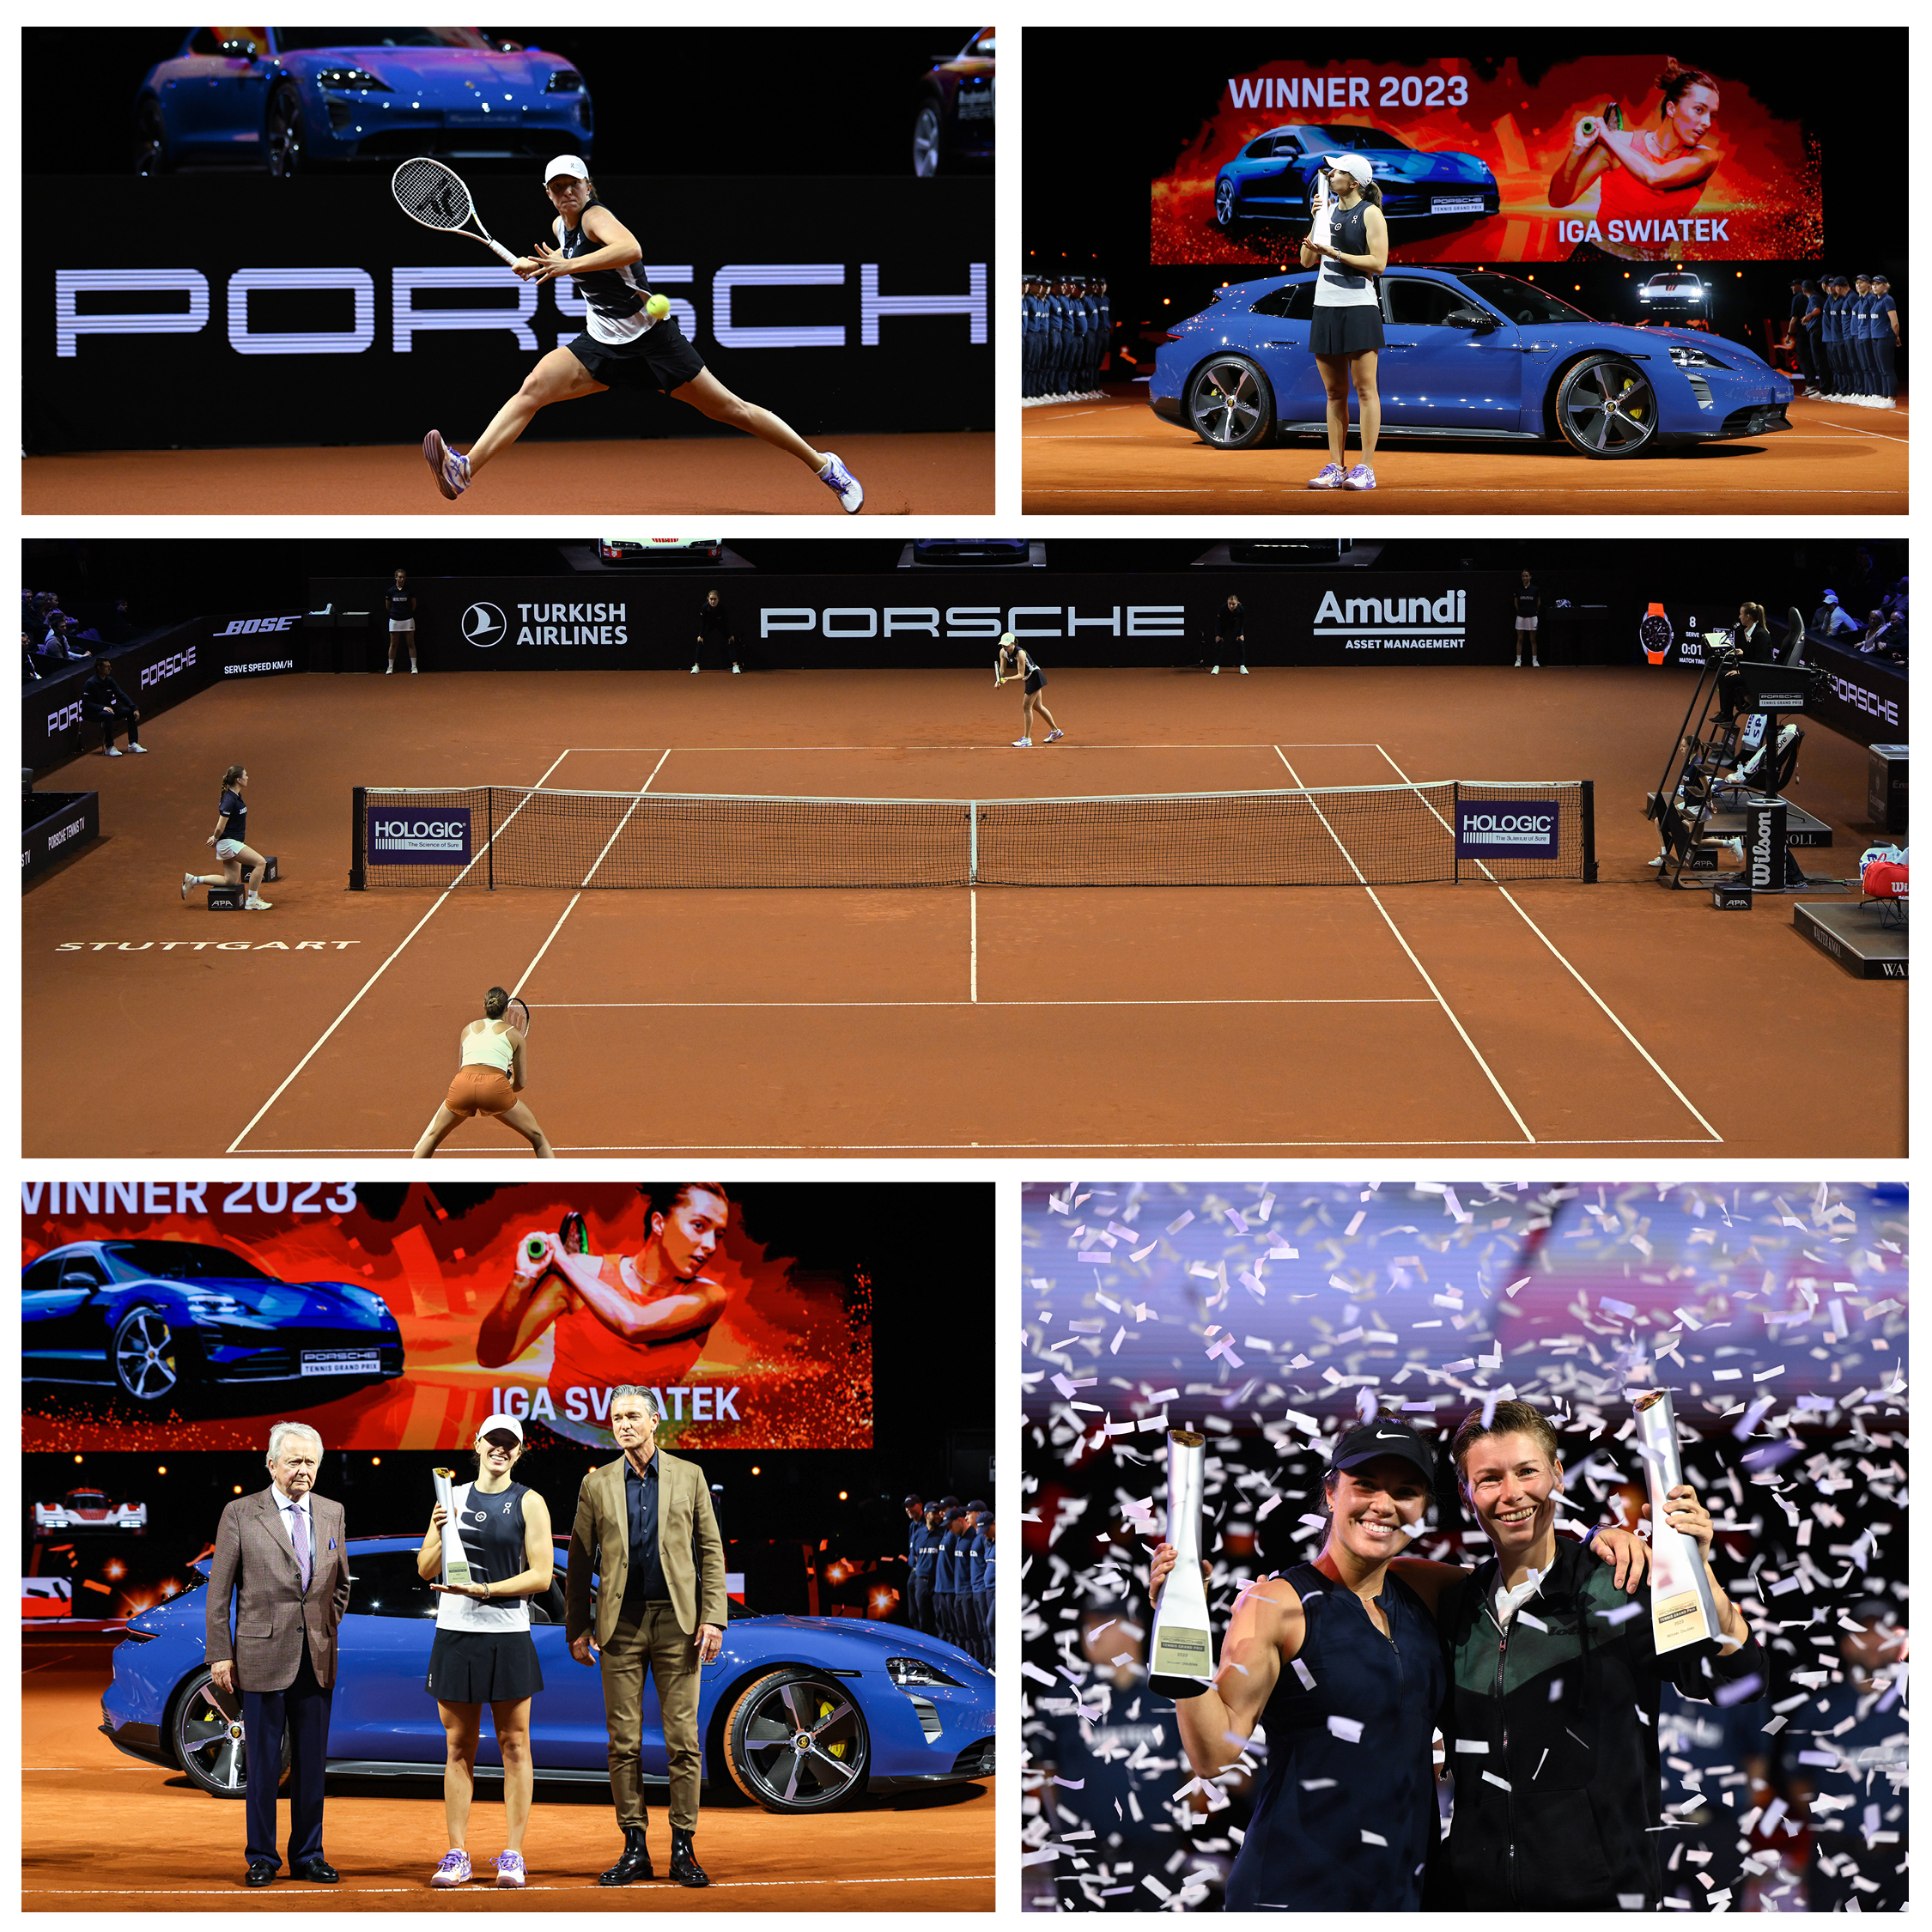 2 grandes torneos – jugadores famosos – tenis en el #Porsche Arena Stuttgart